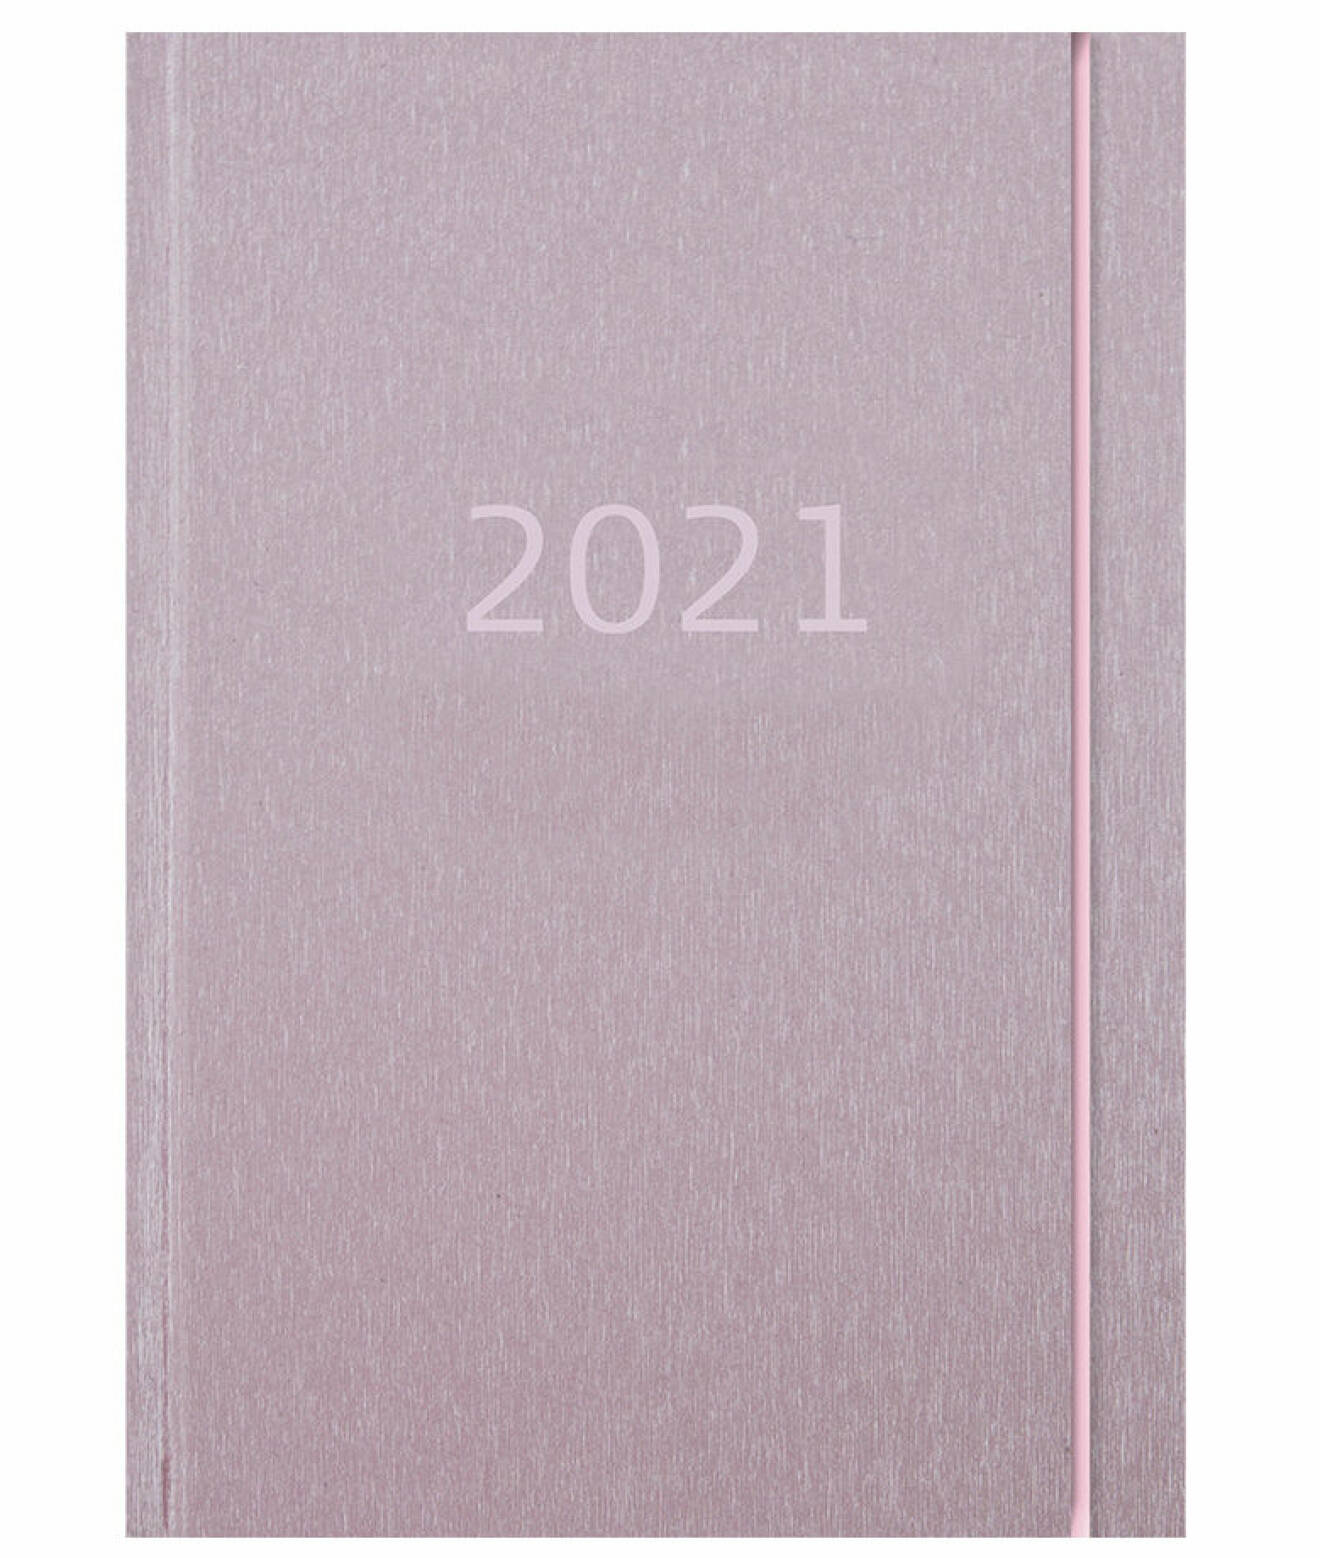 Rosa kalender för 2021.